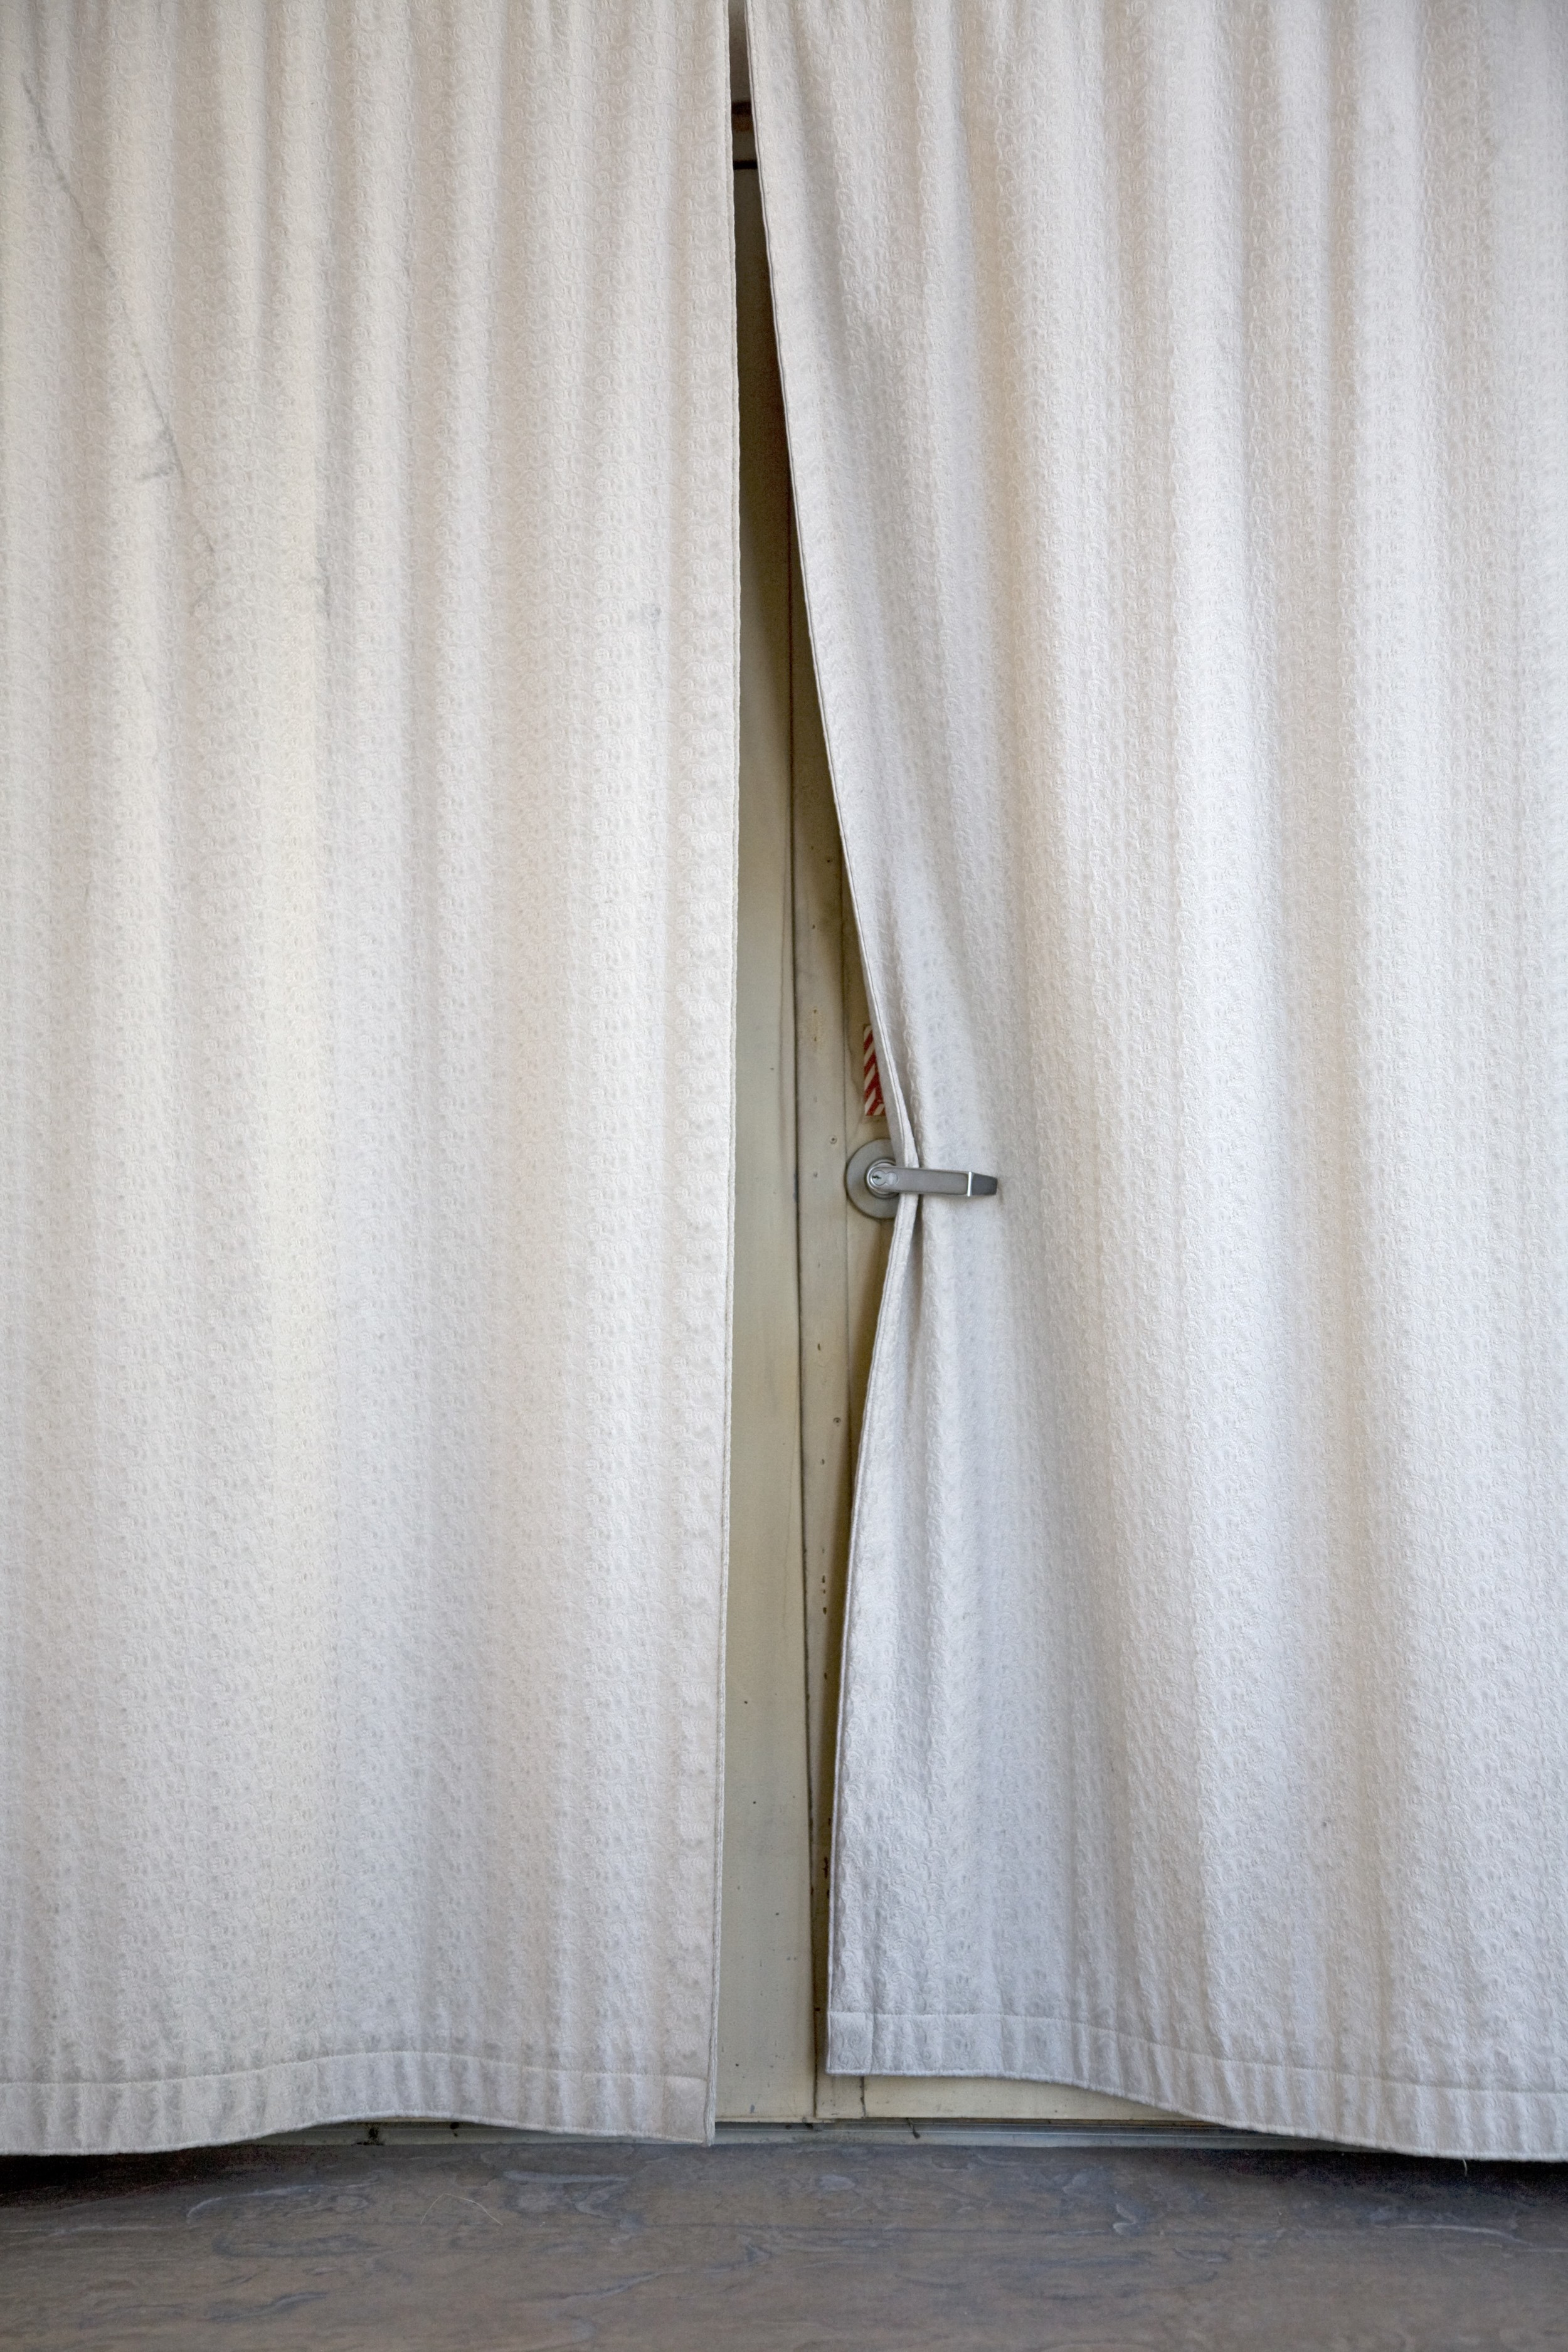   Door Behind Curtain,   2013   